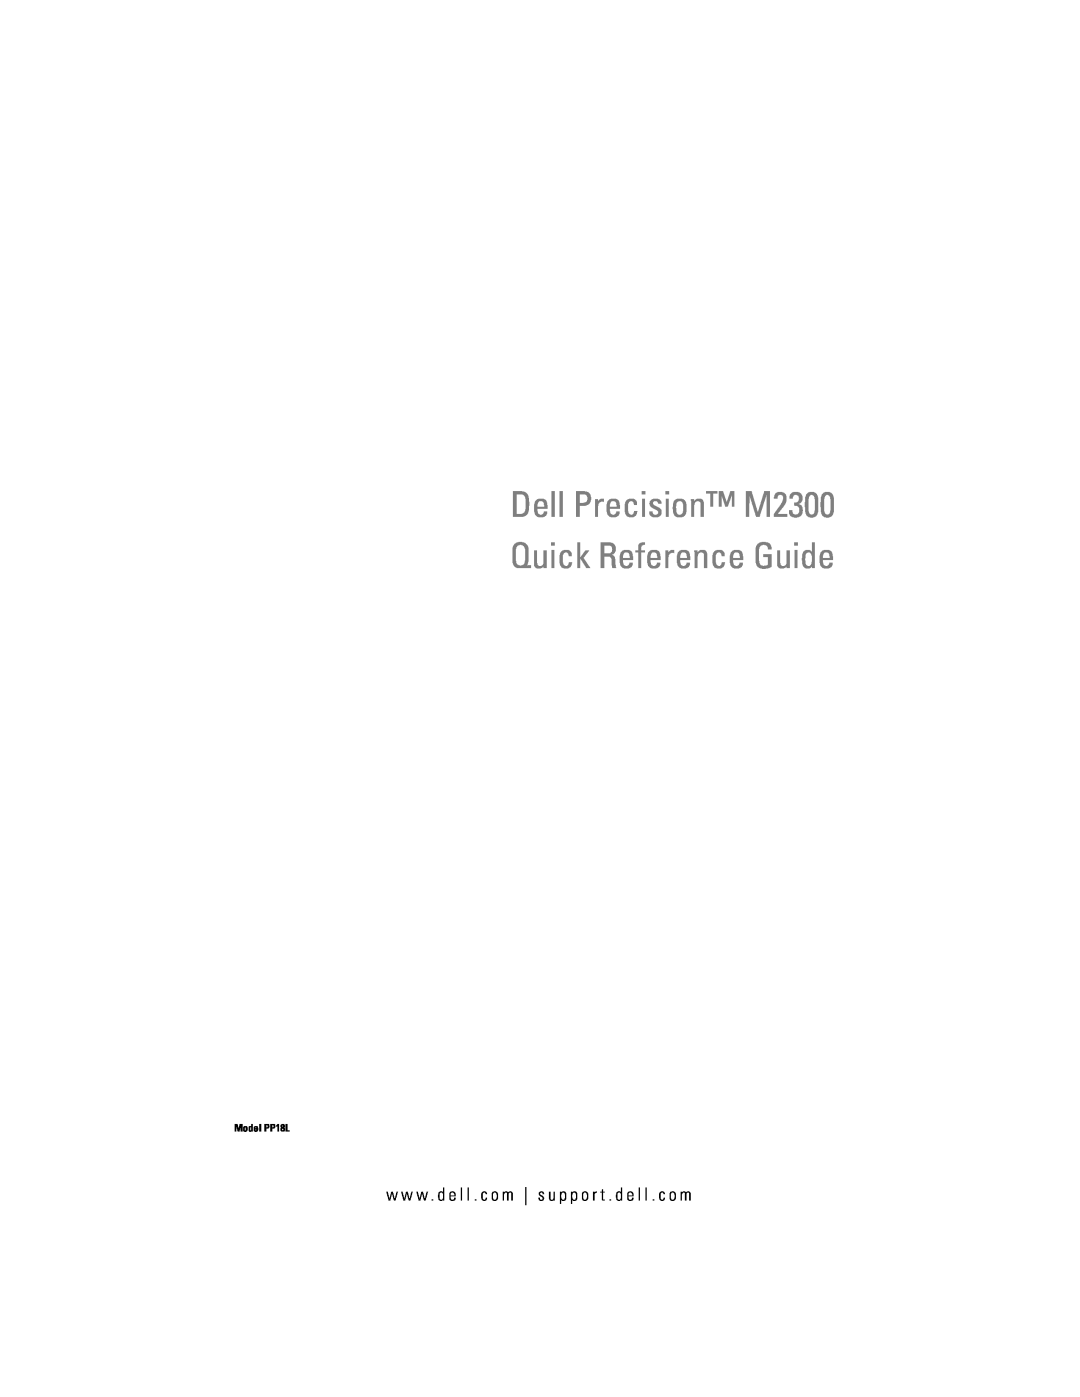 Dell PP18L manual Dell Precision M2300 Quick Reference Guide, w w w . d e l l . c o m s u p p o r t . d e l l . c o m 